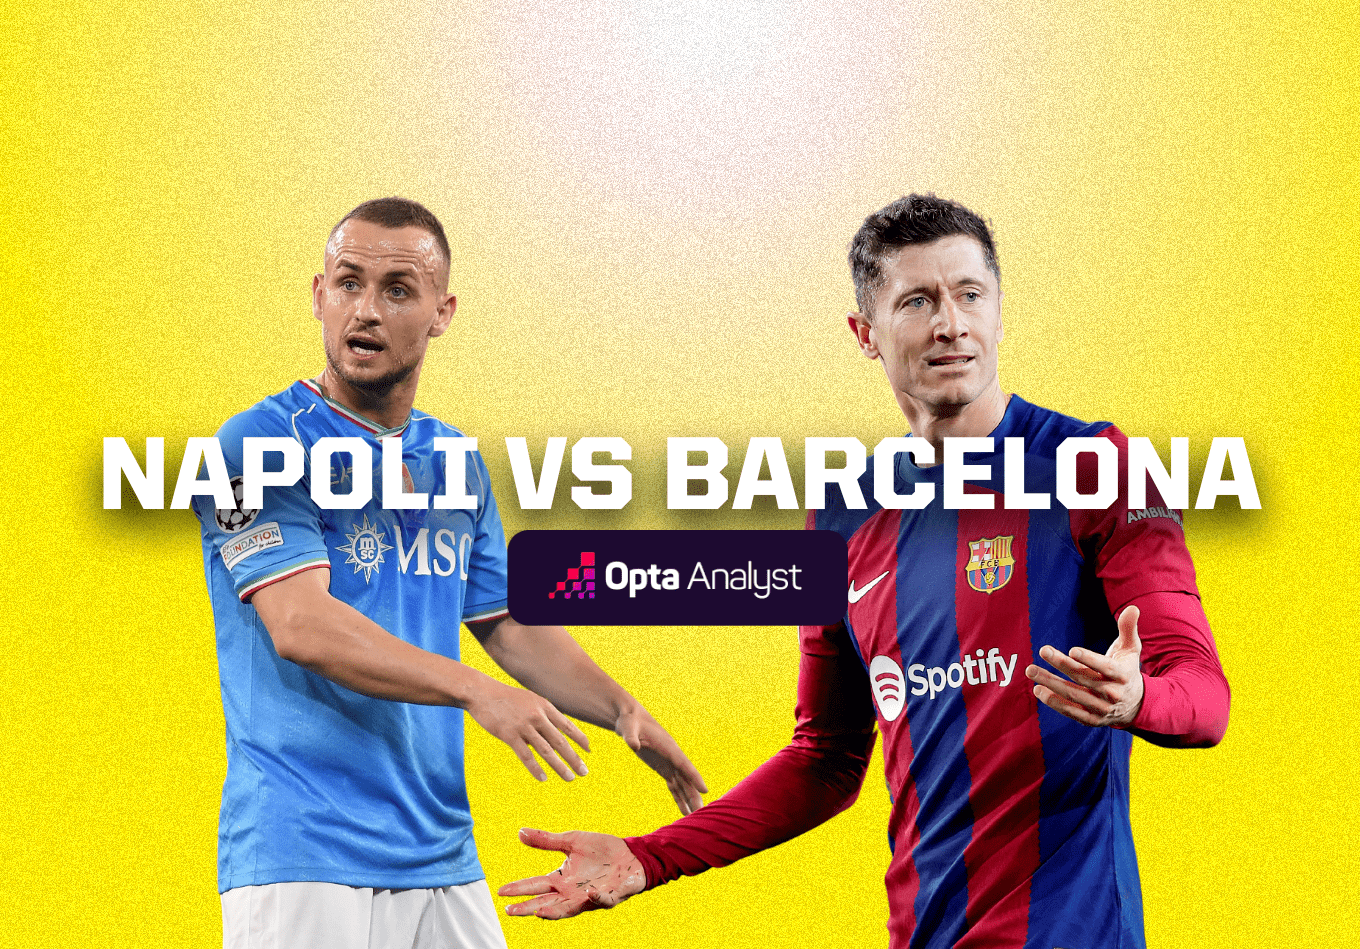 Napoli vs Barcelona: Prediction